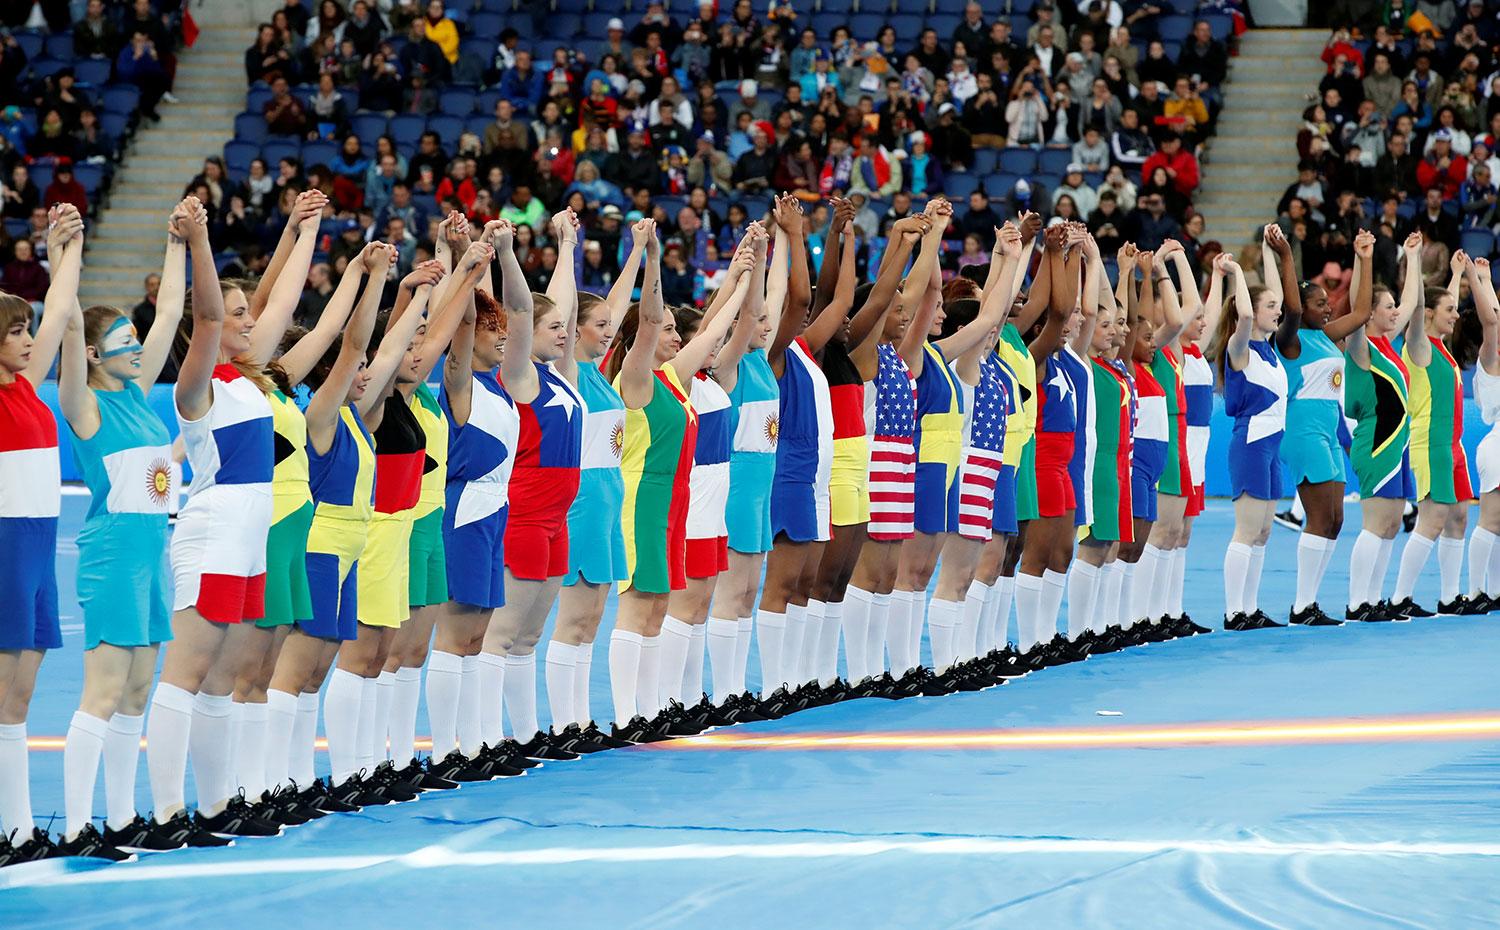 INAUGURACIÓN. El mundial de Fútbol Femenino se jugará del 7 de junio al 7 de julio en Francia.